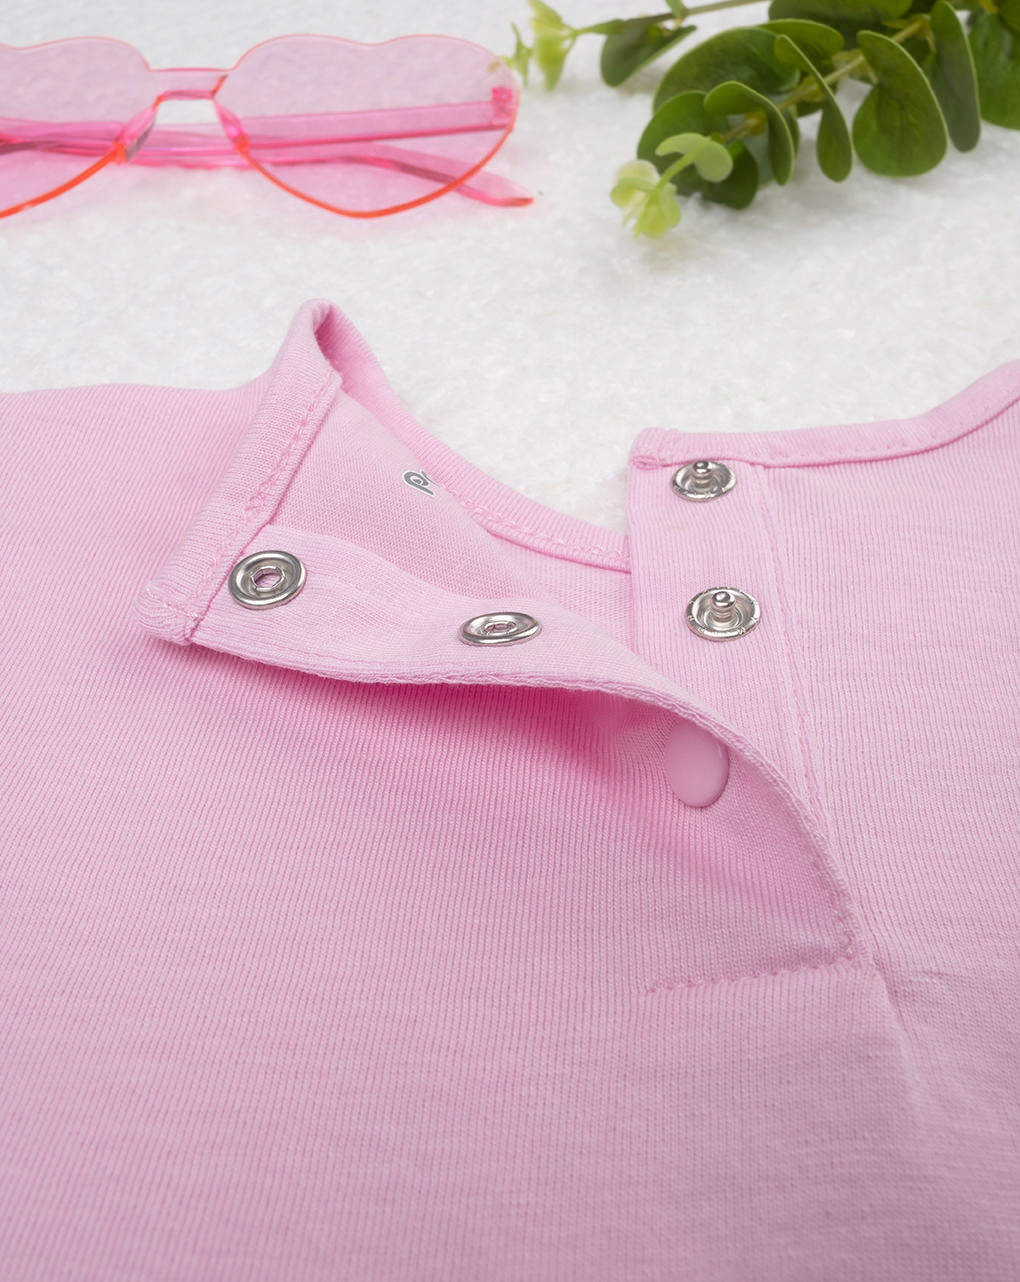 βρεφική μπλούζα ροζ με λαγουδάκια για κορίτσι - Prénatal